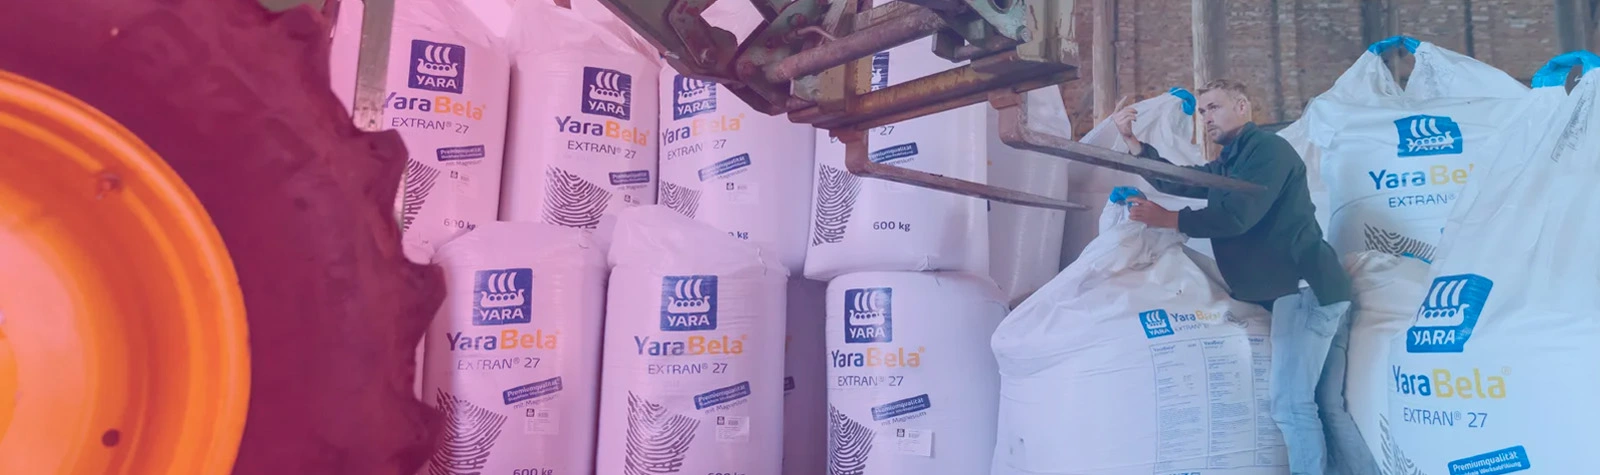 JNR Logística - Com a RodoJR você pode armazenar e transportar  fertilizantes com qualidade, segurança e eficiência para evitar prejuízos e  otimizar os seus lucros. Ligue para a RodoJr e seja nosso